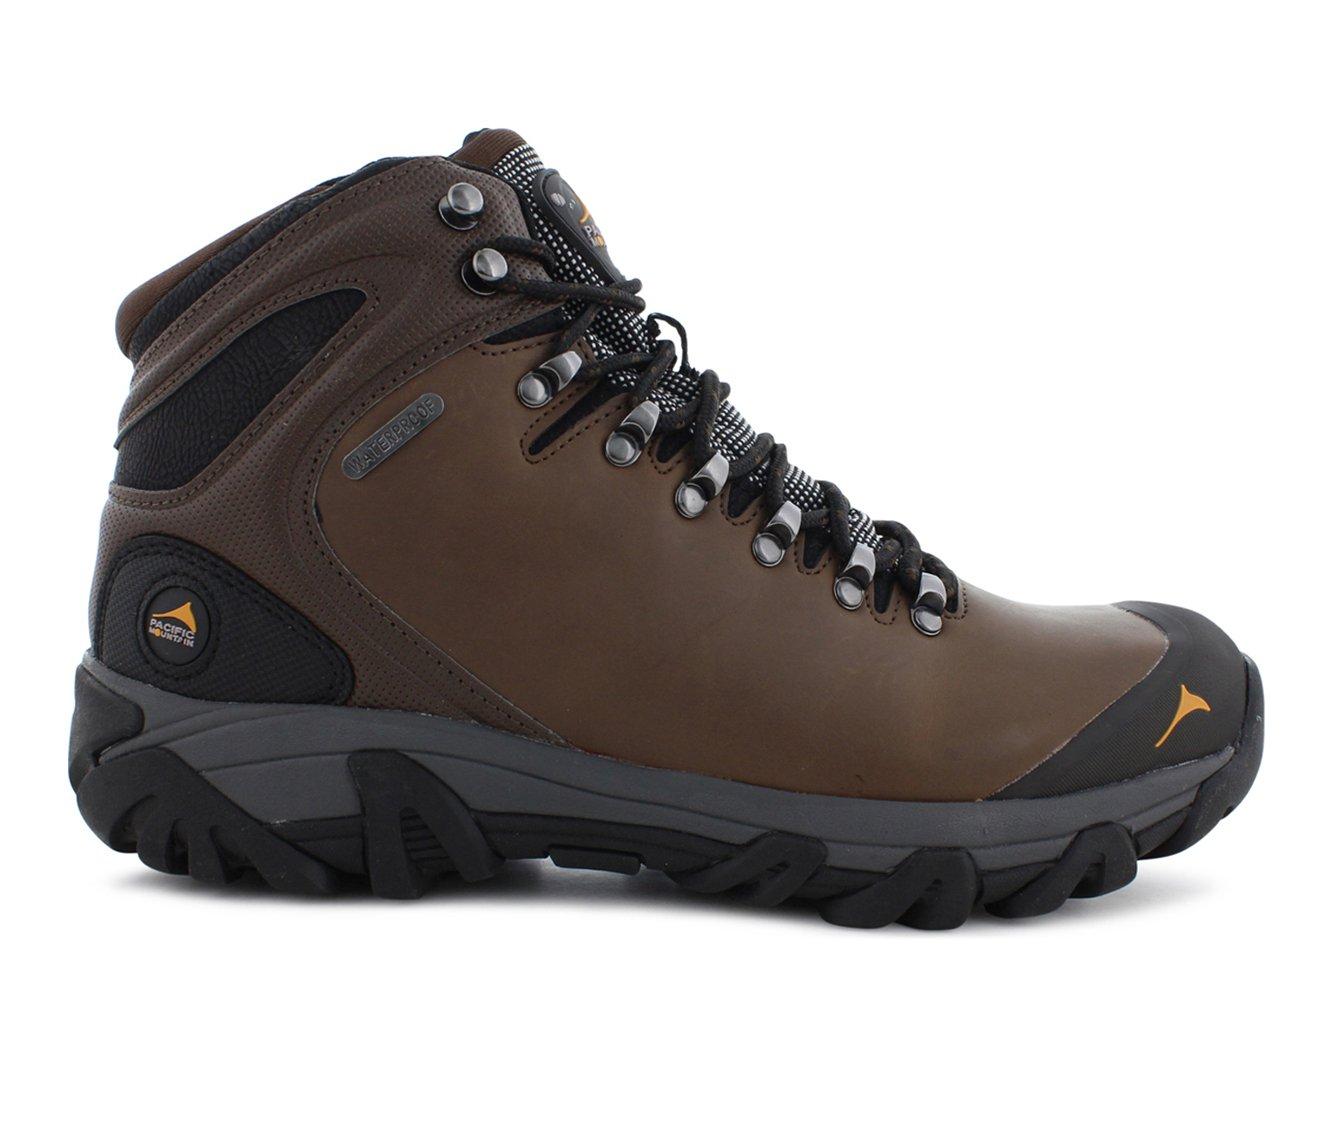 Men's Pacific Mountain Elbert Waterproof Hiking Boots